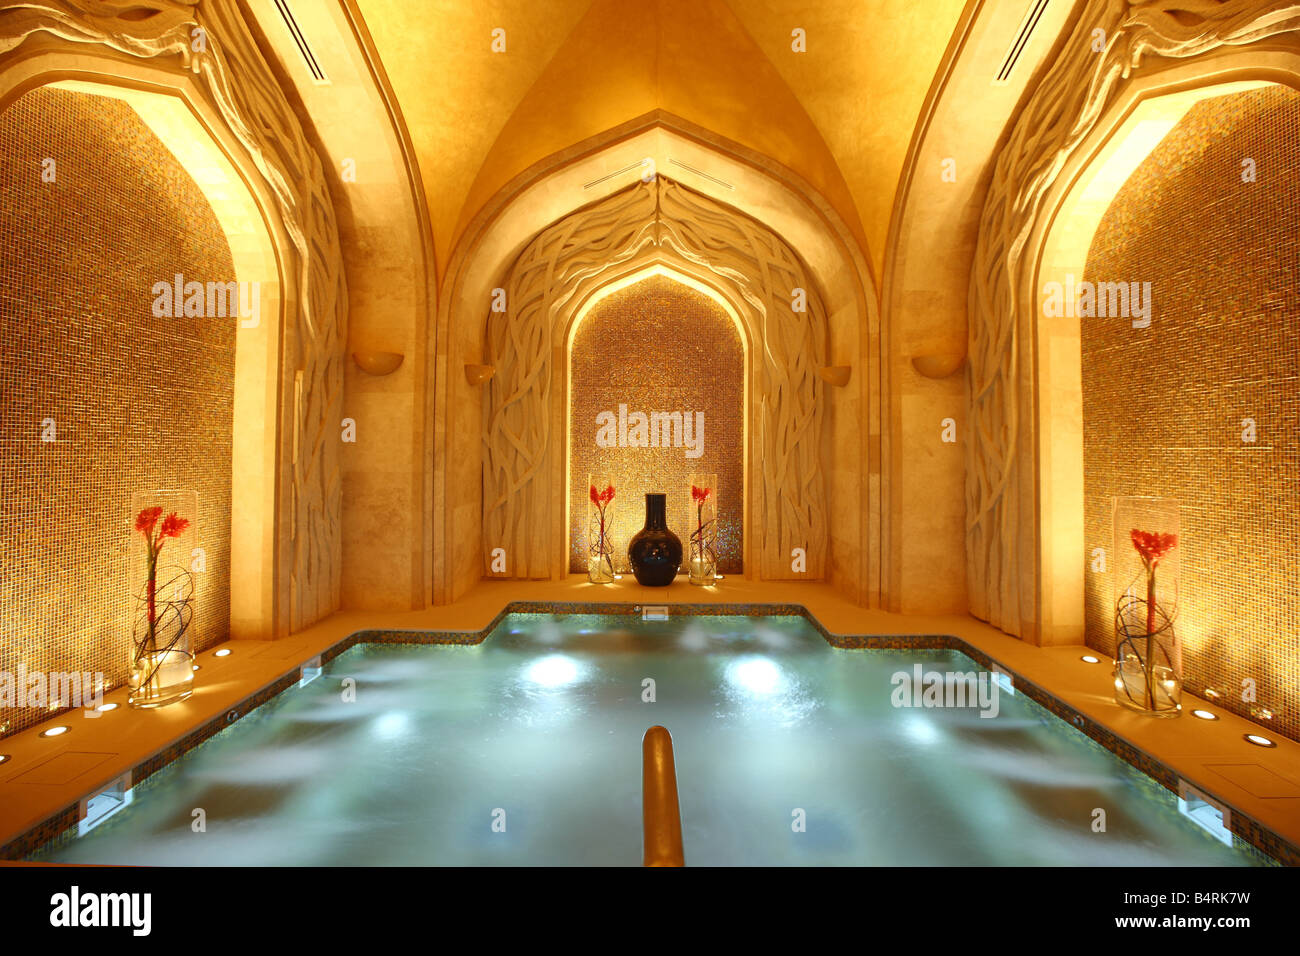 Spa area in the Atlantis Hotel, The Palm, Dubai, United Arab Emirates. Stock Photo